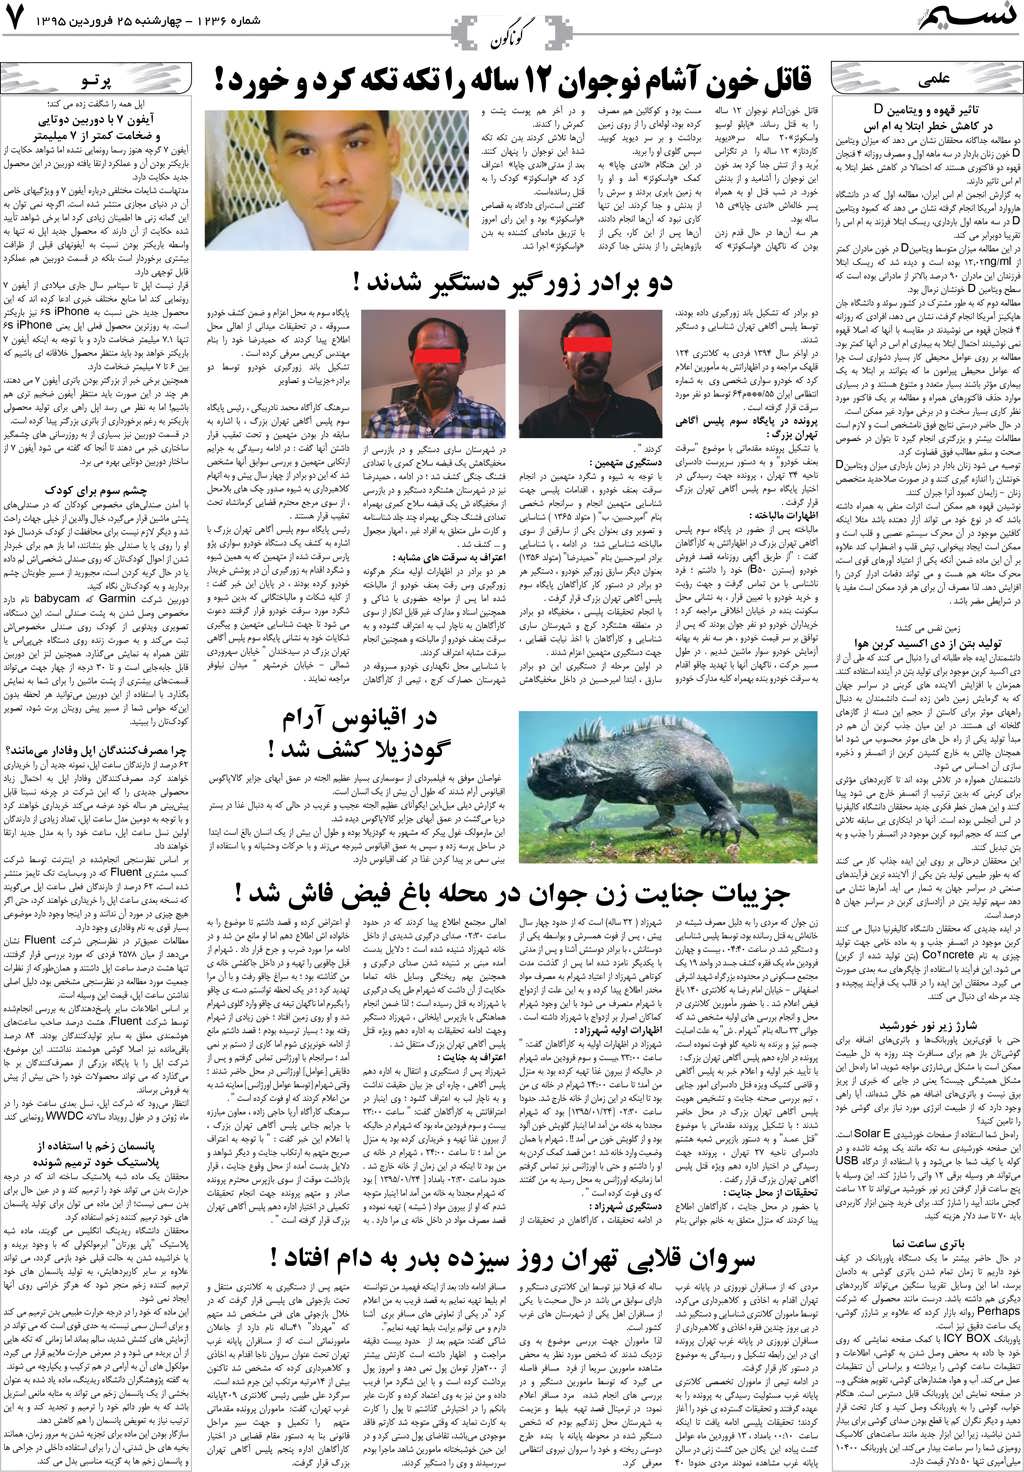 صفحه گوناگون روزنامه نسیم شماره 1236